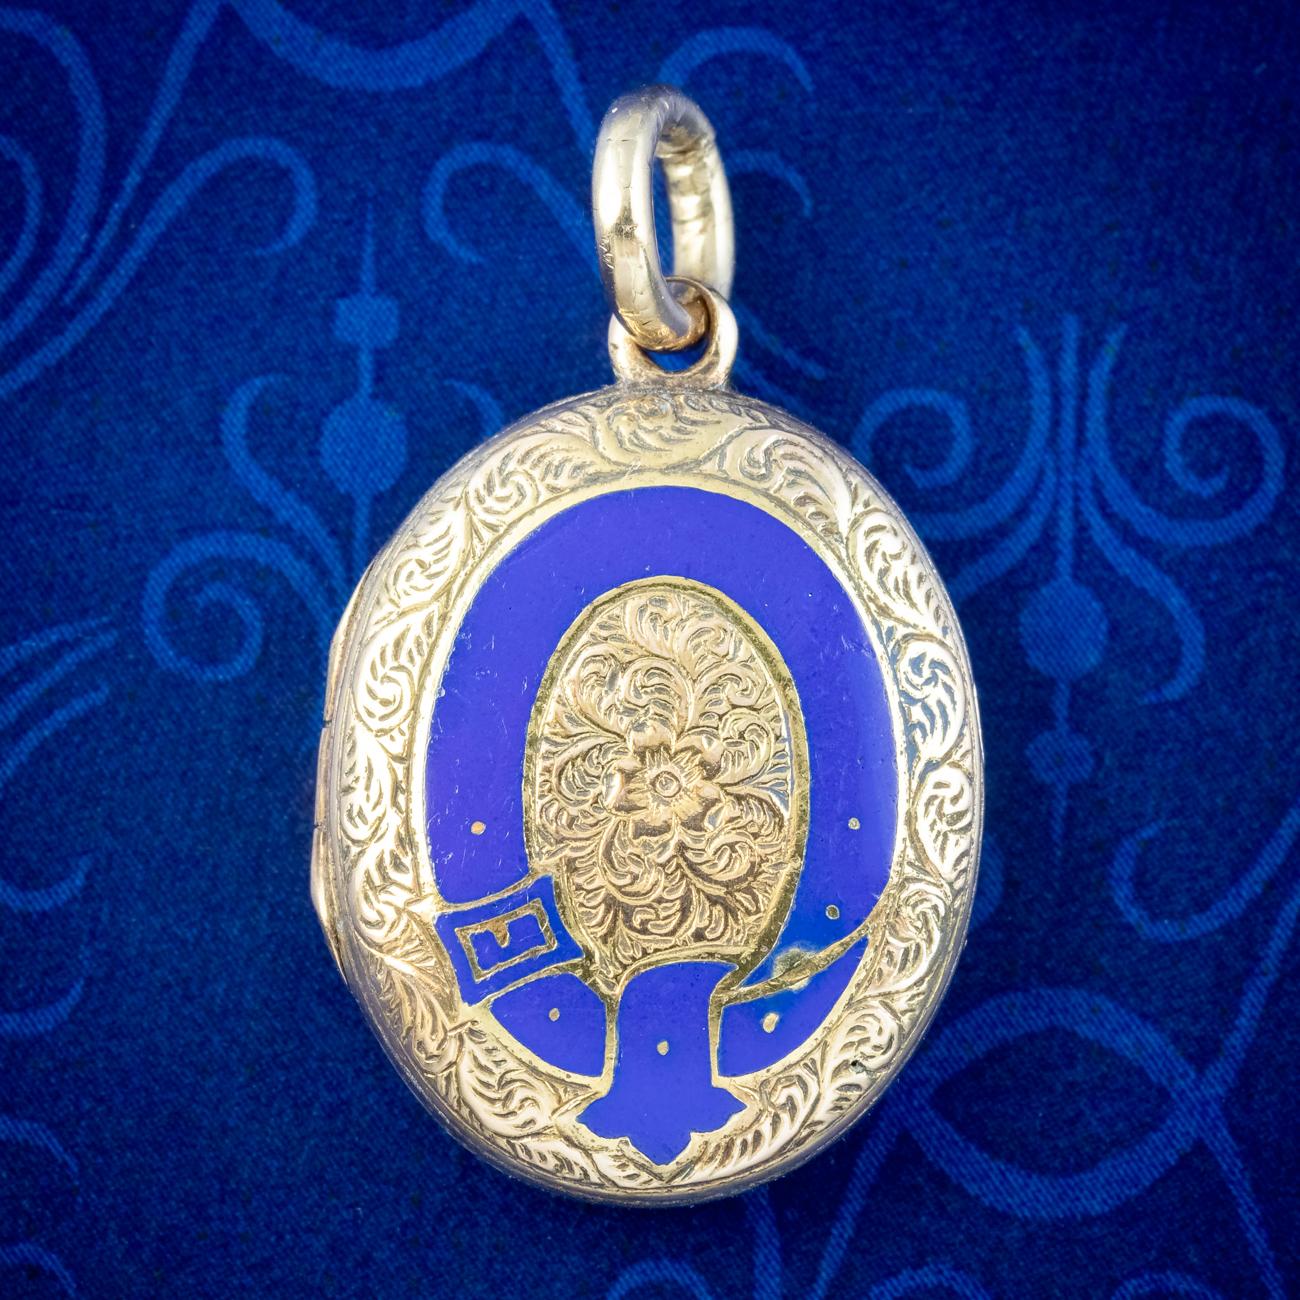 Un petit médaillon de deuil victorien antique, façonné en or 9ct avec des volutes et des feuillages ciselés sur les deux côtés, ainsi qu'une ceinture circulaire et une boucle sur le devant, rehaussées d'émail bleu royal avec un forget me not au